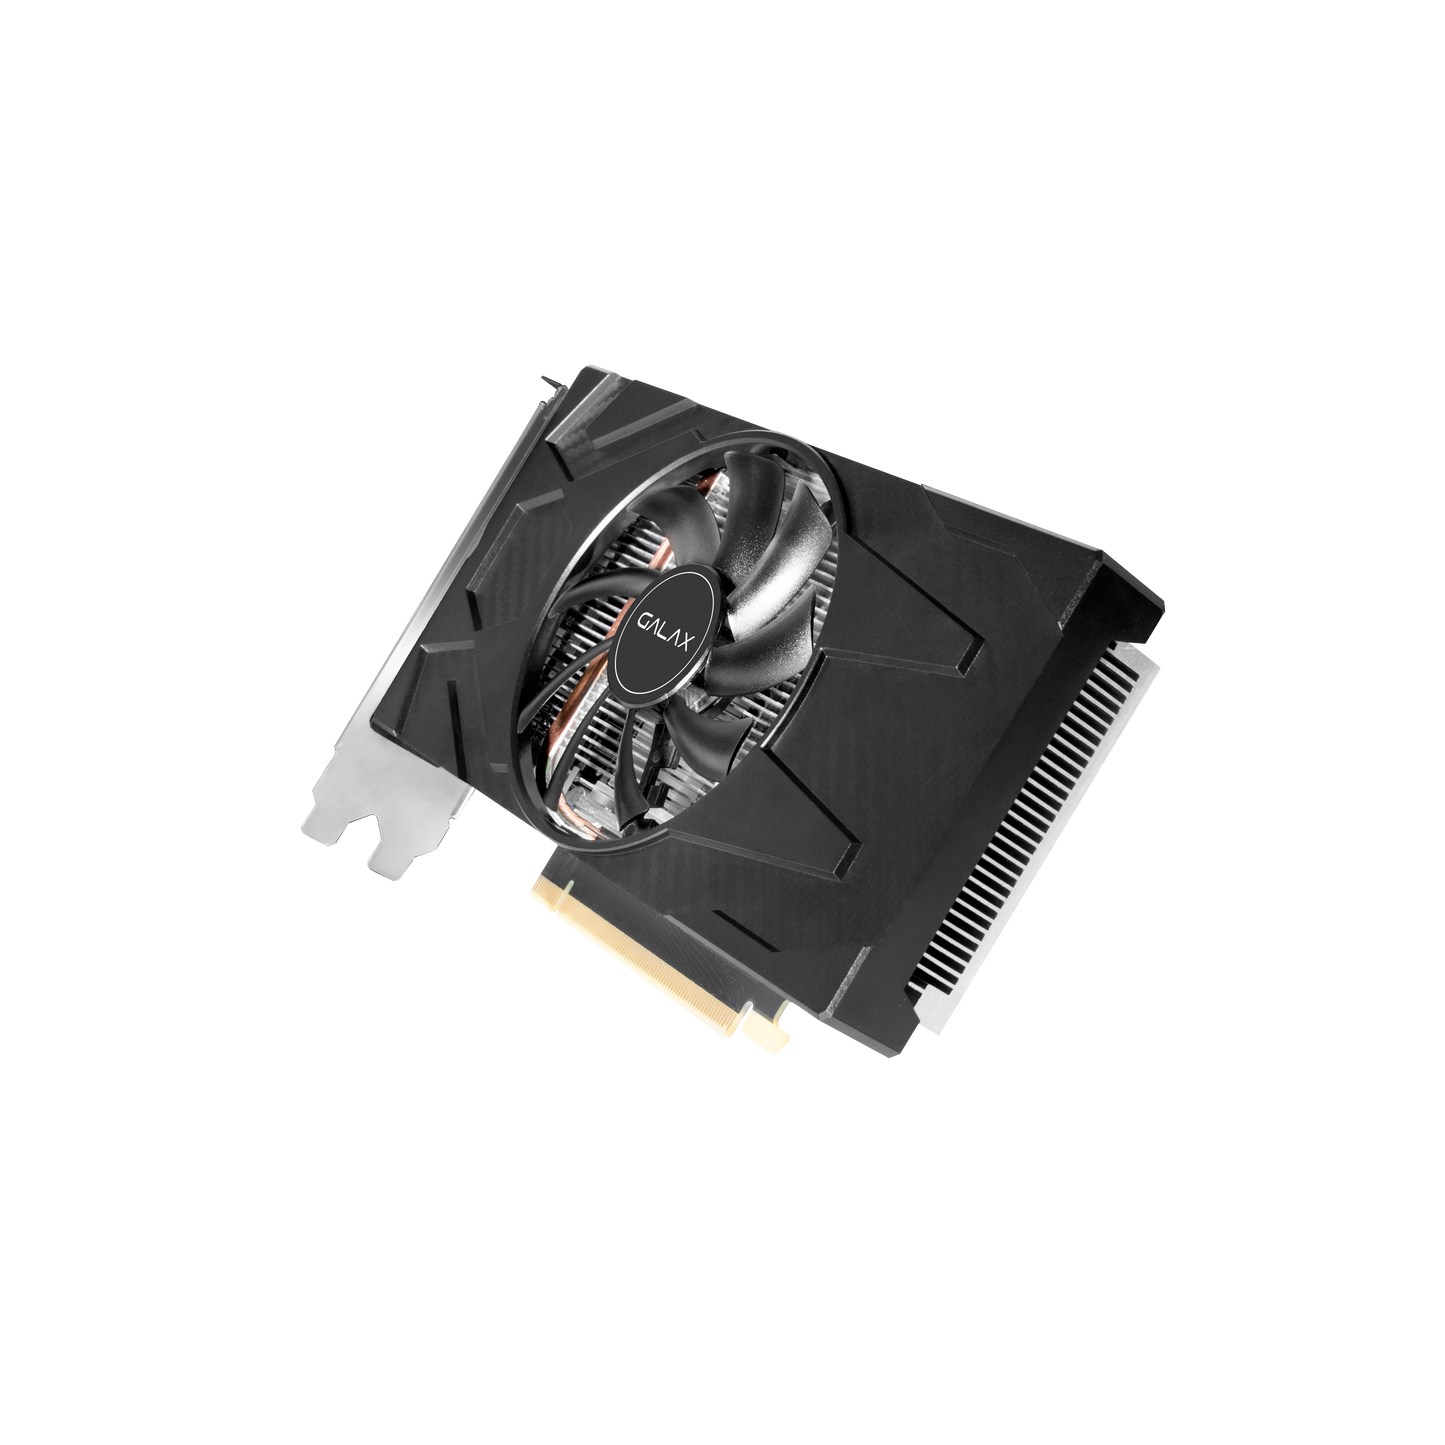 GALAX GeForce RTX 3050 (1-Click OC) 8GB GDDR6 128-bit DP*3/HDMI/ Graphics Card